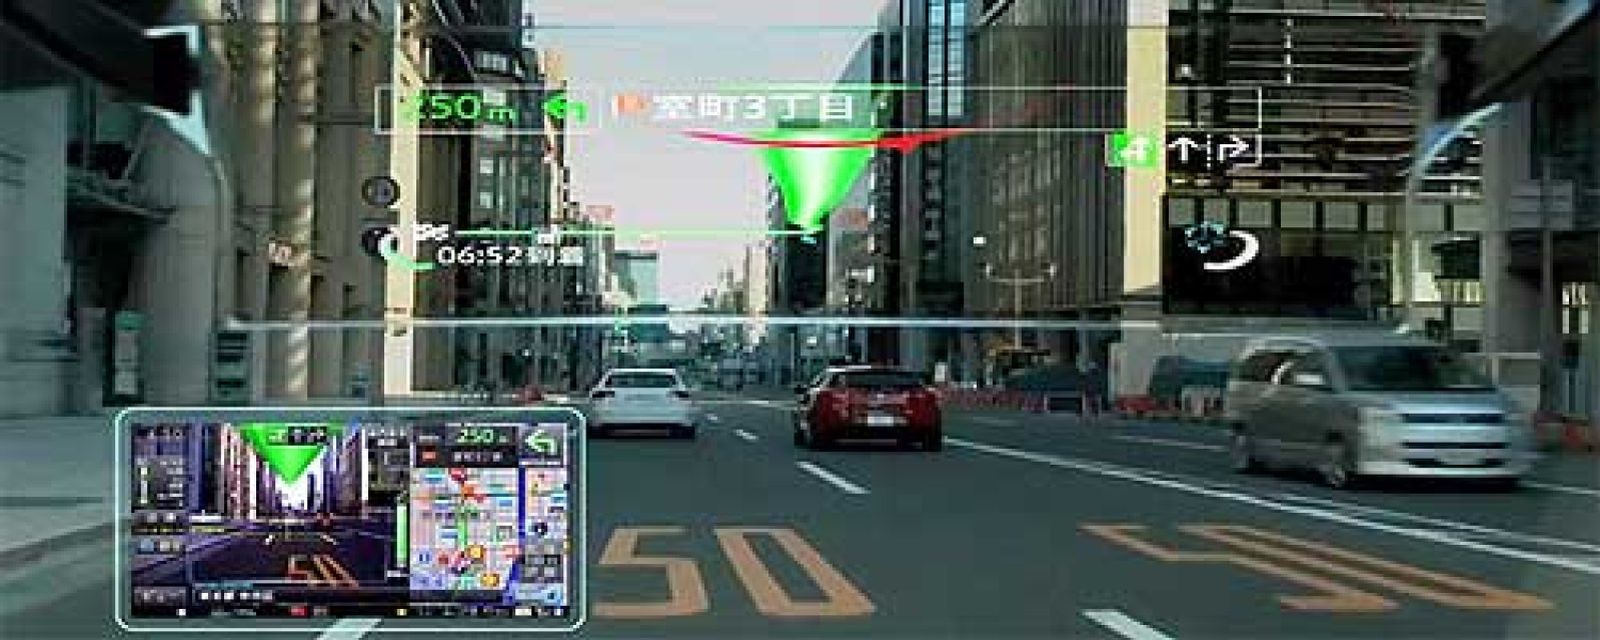 Foto: HP crea una pantalla transparente y flexible para mostrar información en el parabrisas del coche